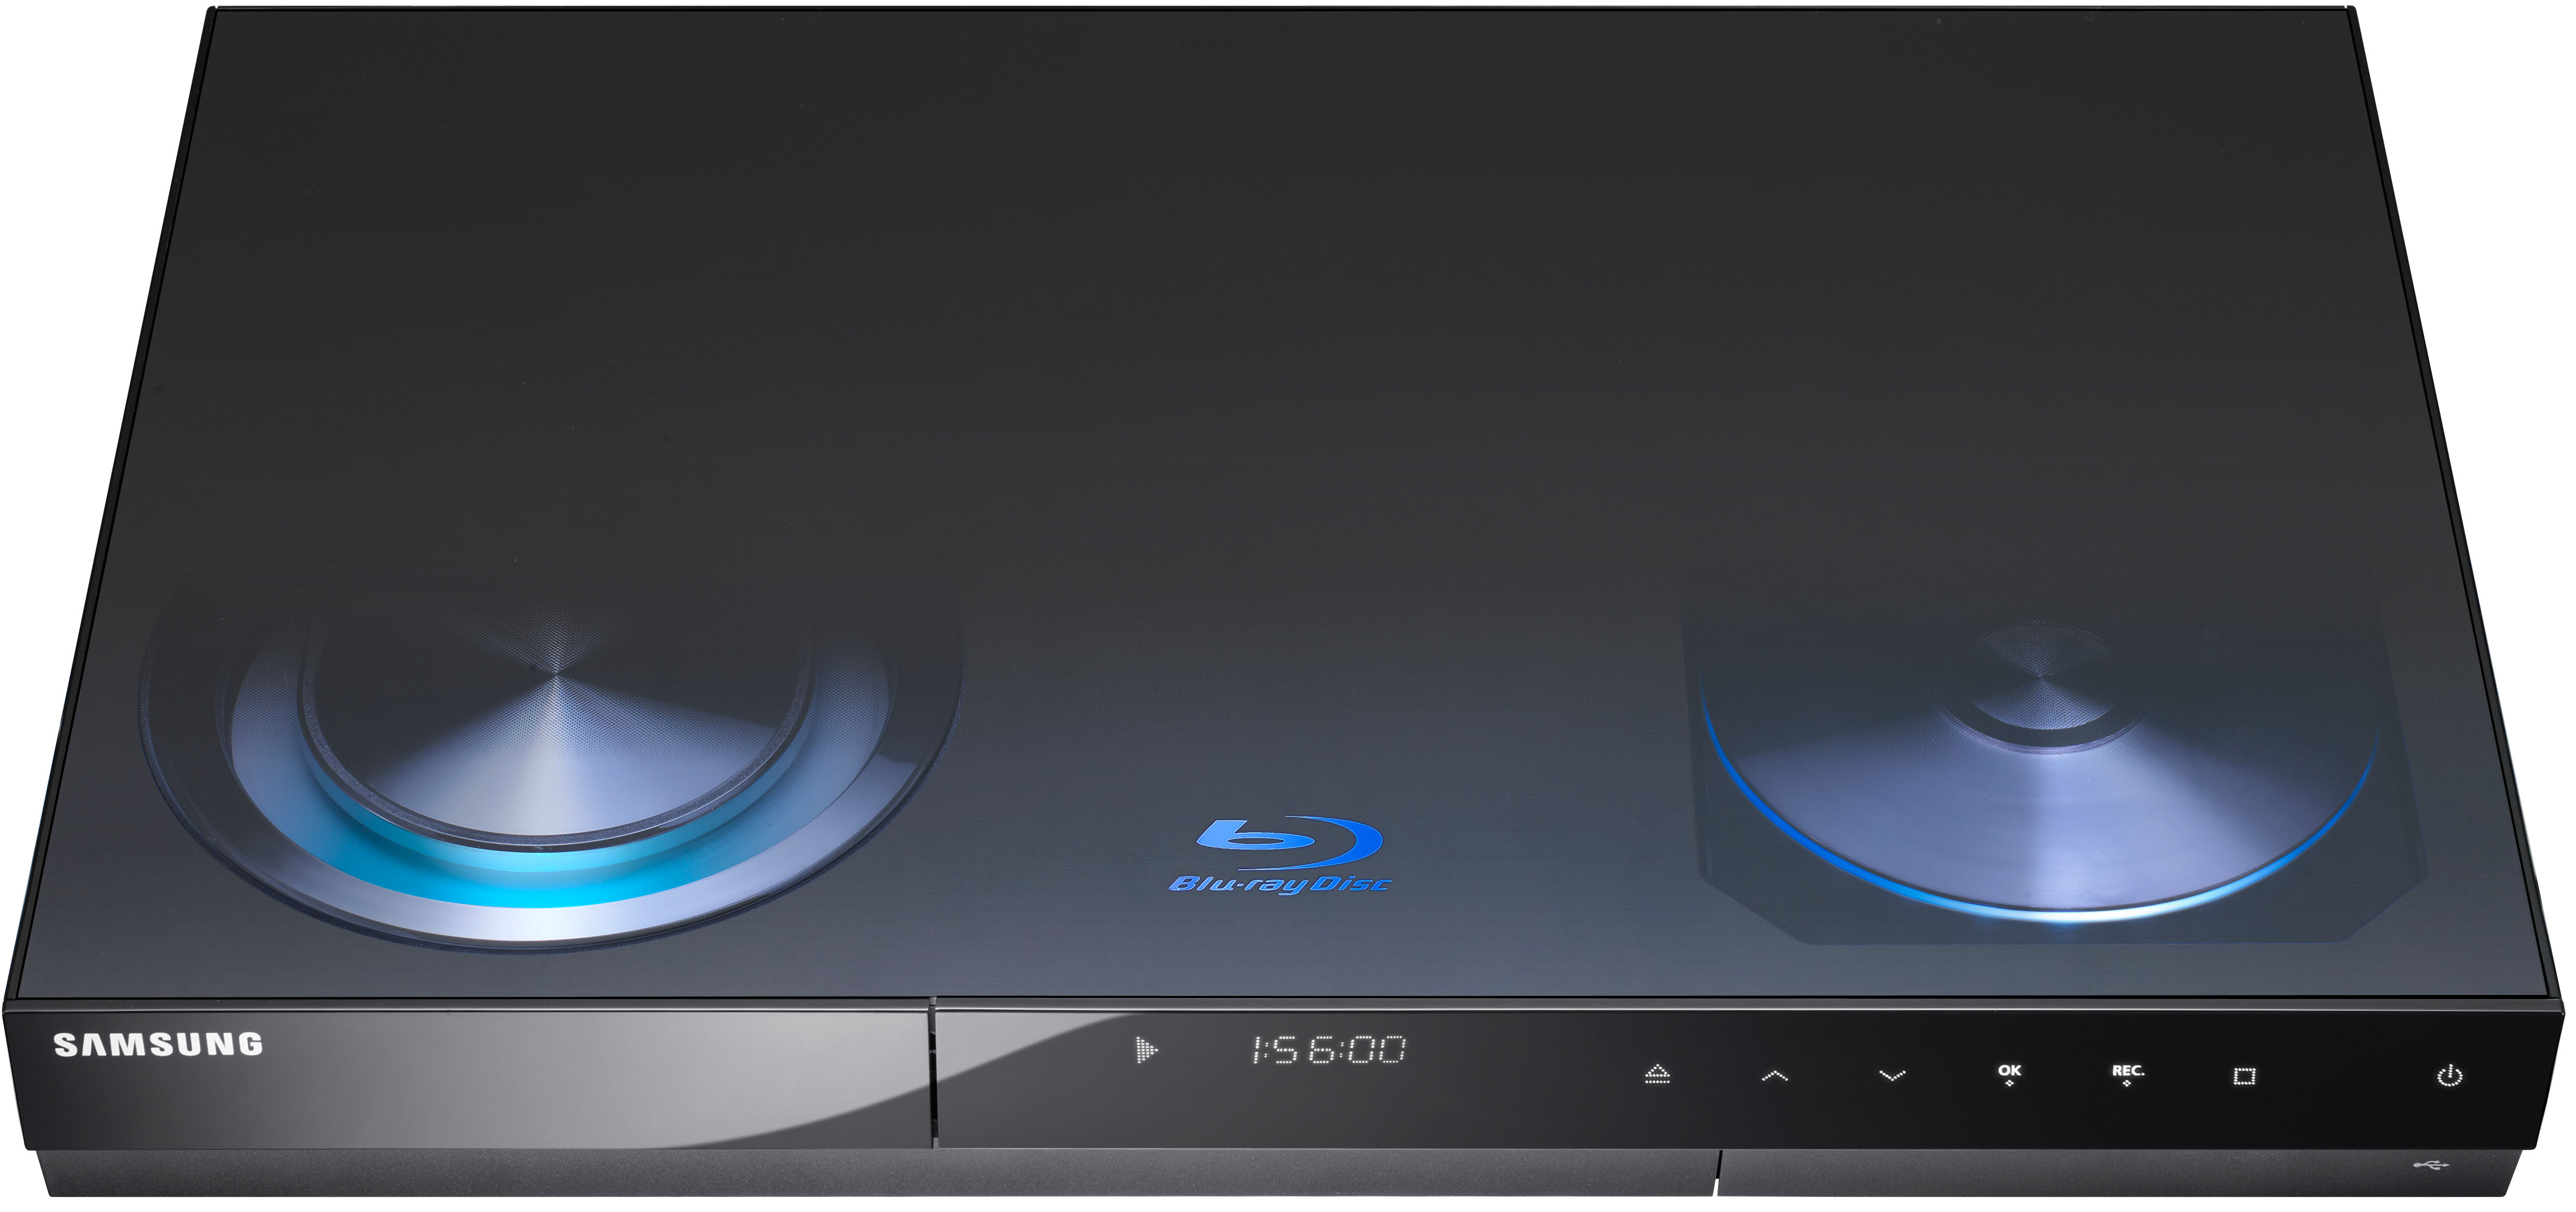 Телевизор samsung плеер. Blu-ray-плеер Samsung bd-c6900. Blu ray проигрыватель Samsung 3d. Samsung bd-c6900. Samsung Blu ray 3d.